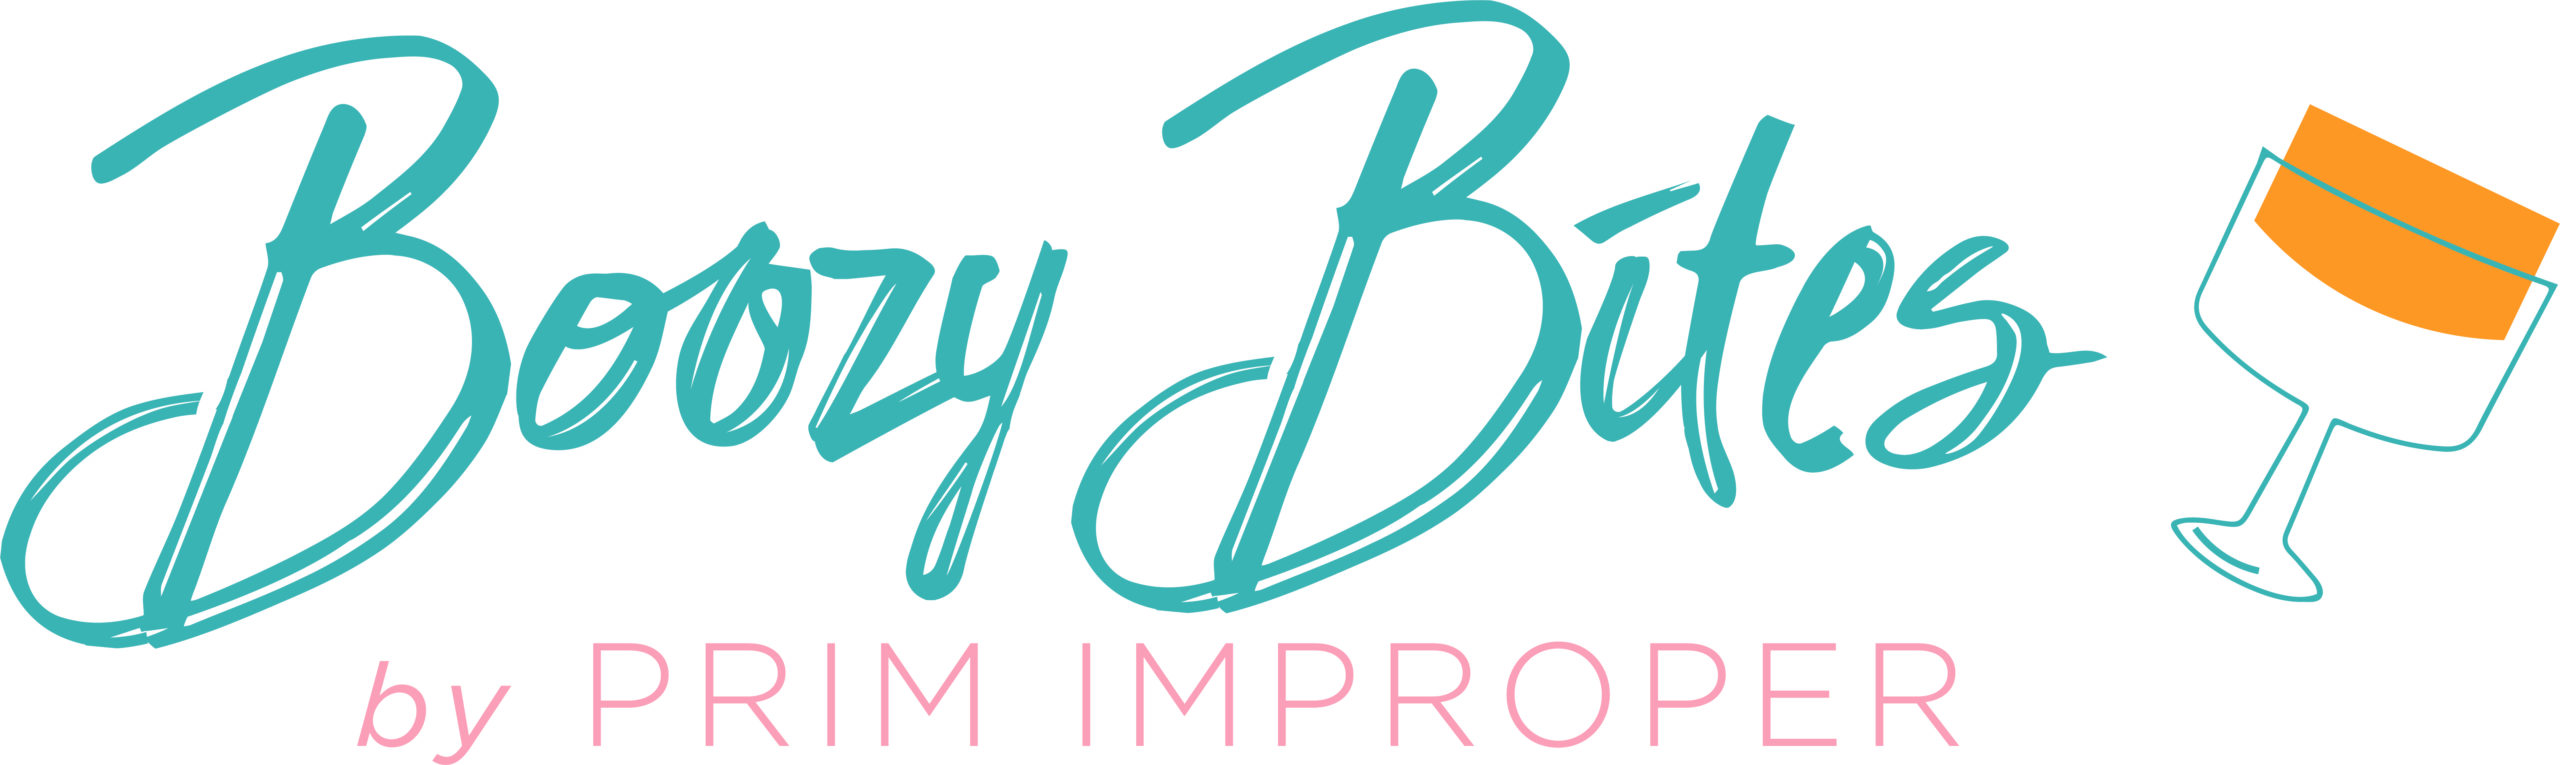 Boozy Bites by Prim Improper Logo